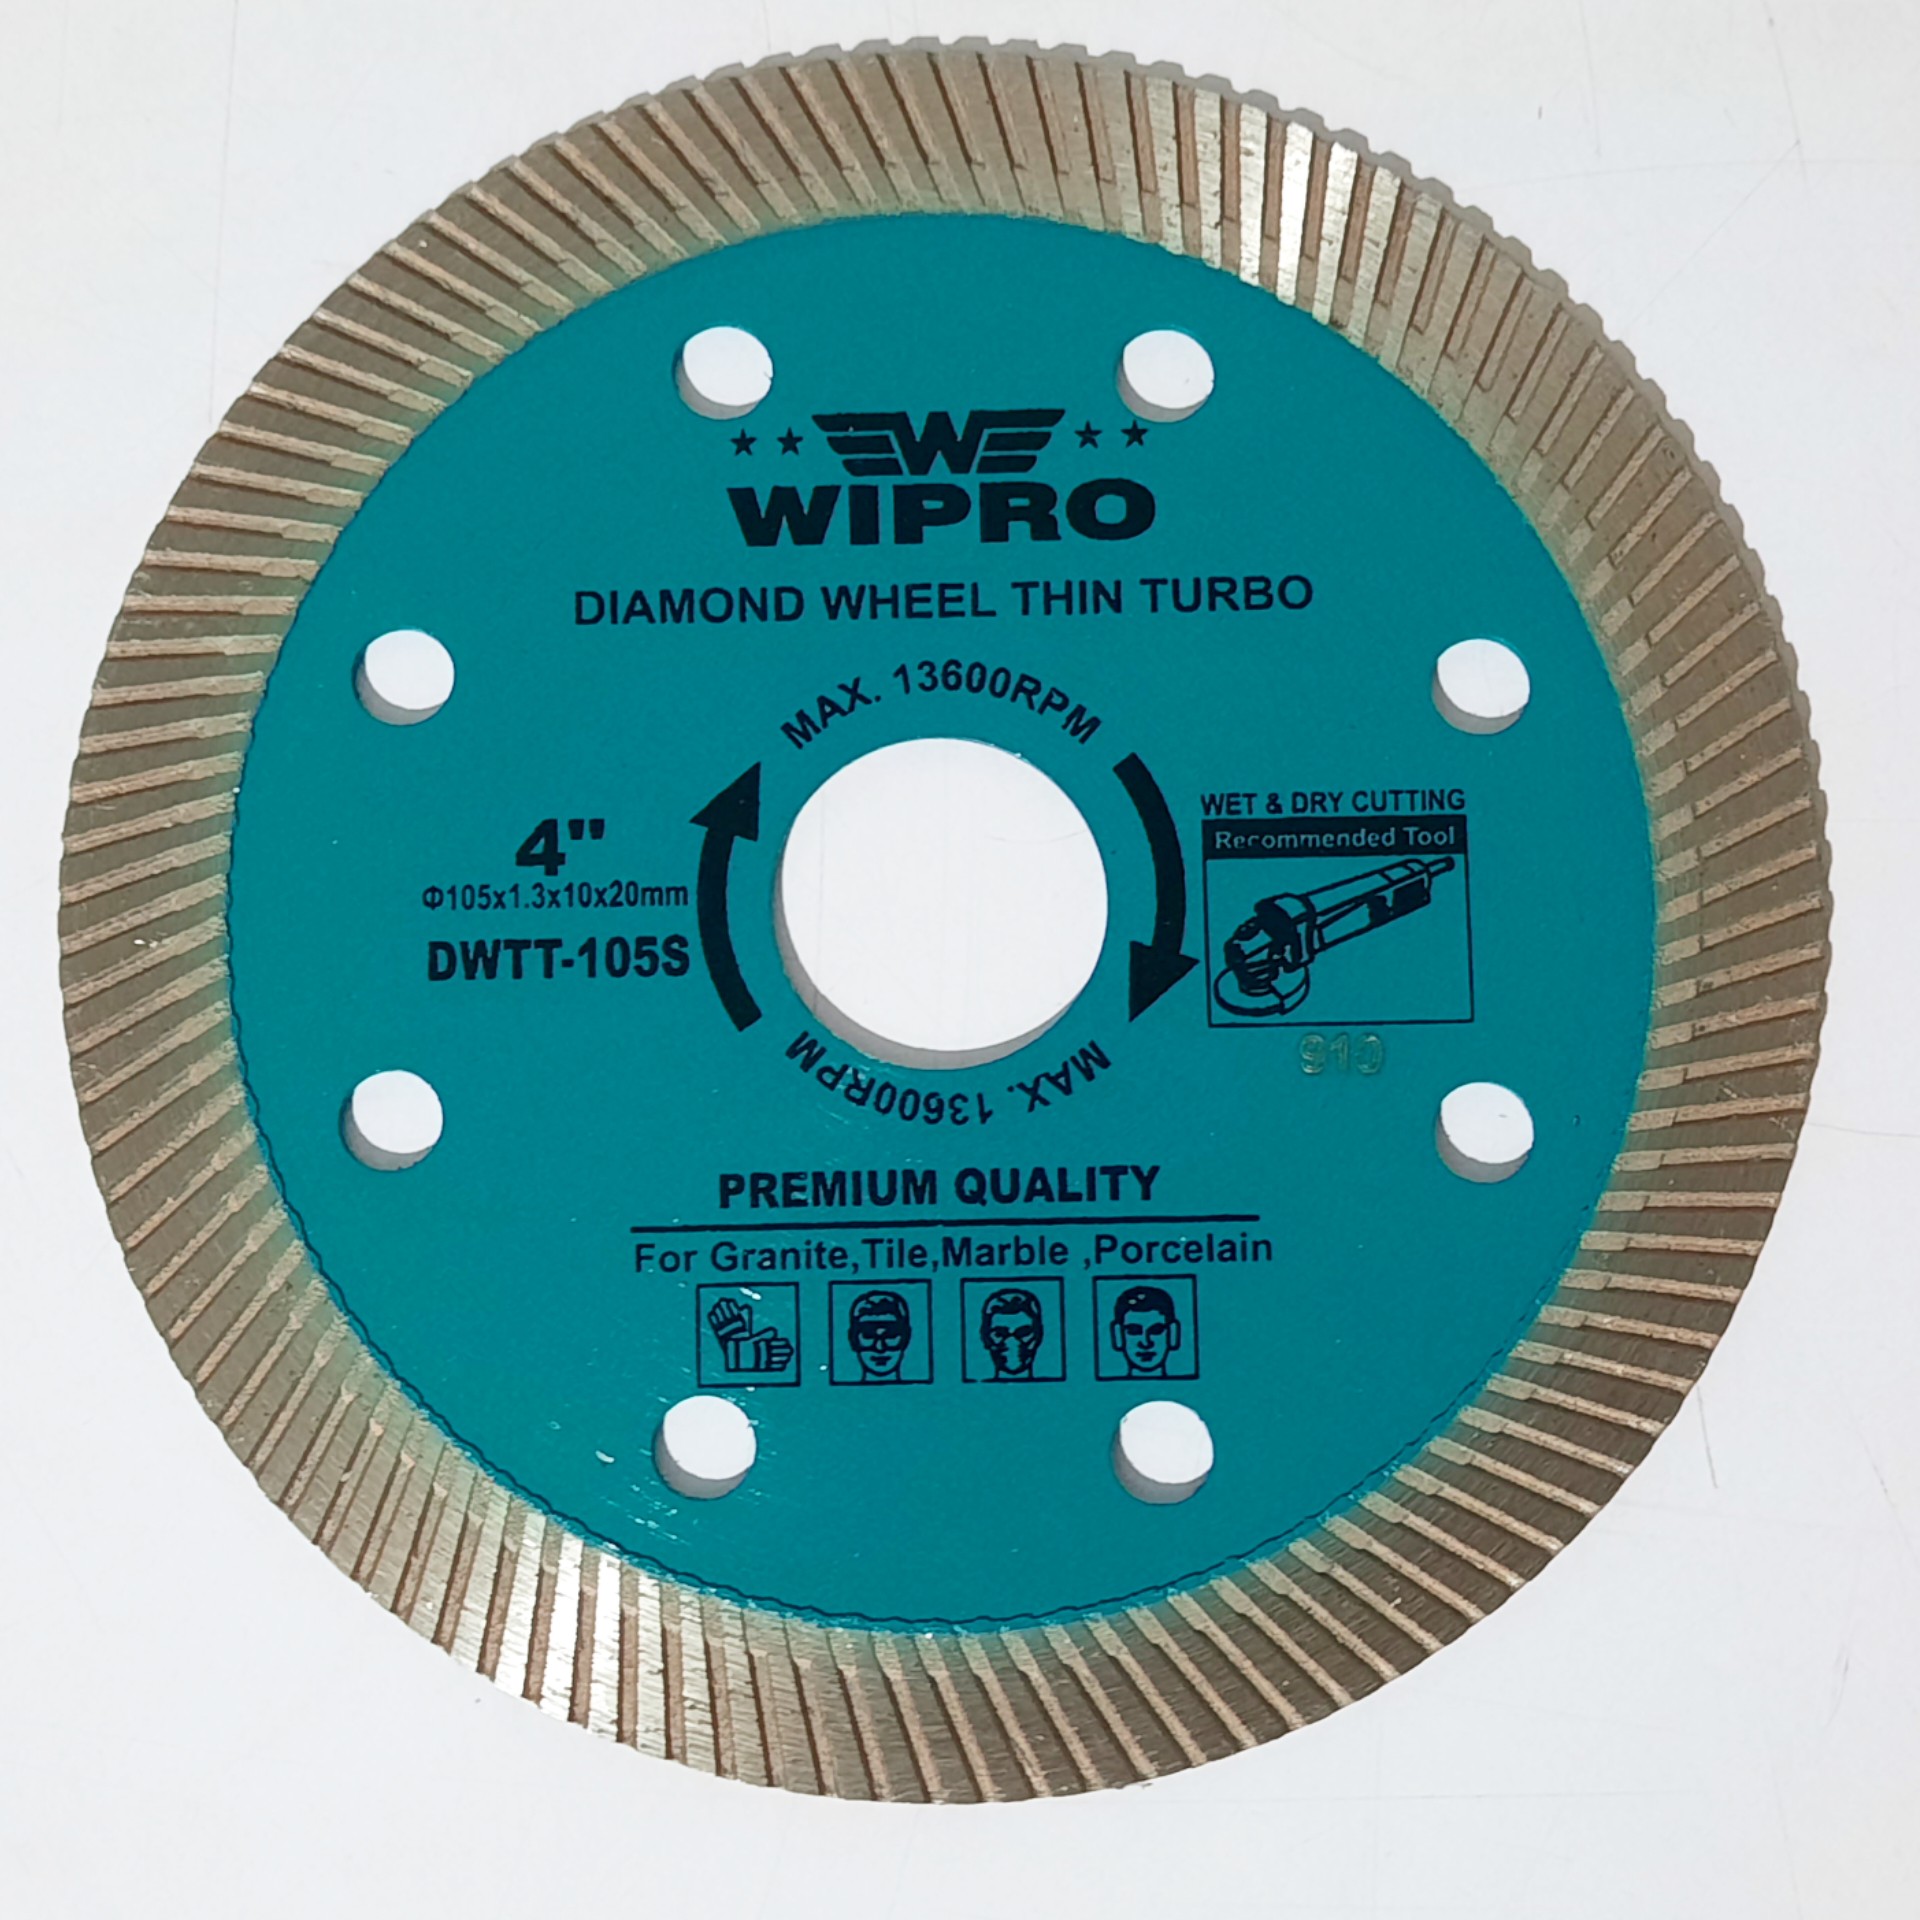 Diamond Wheel Turbo 4 Wipro DWTT-105S 3